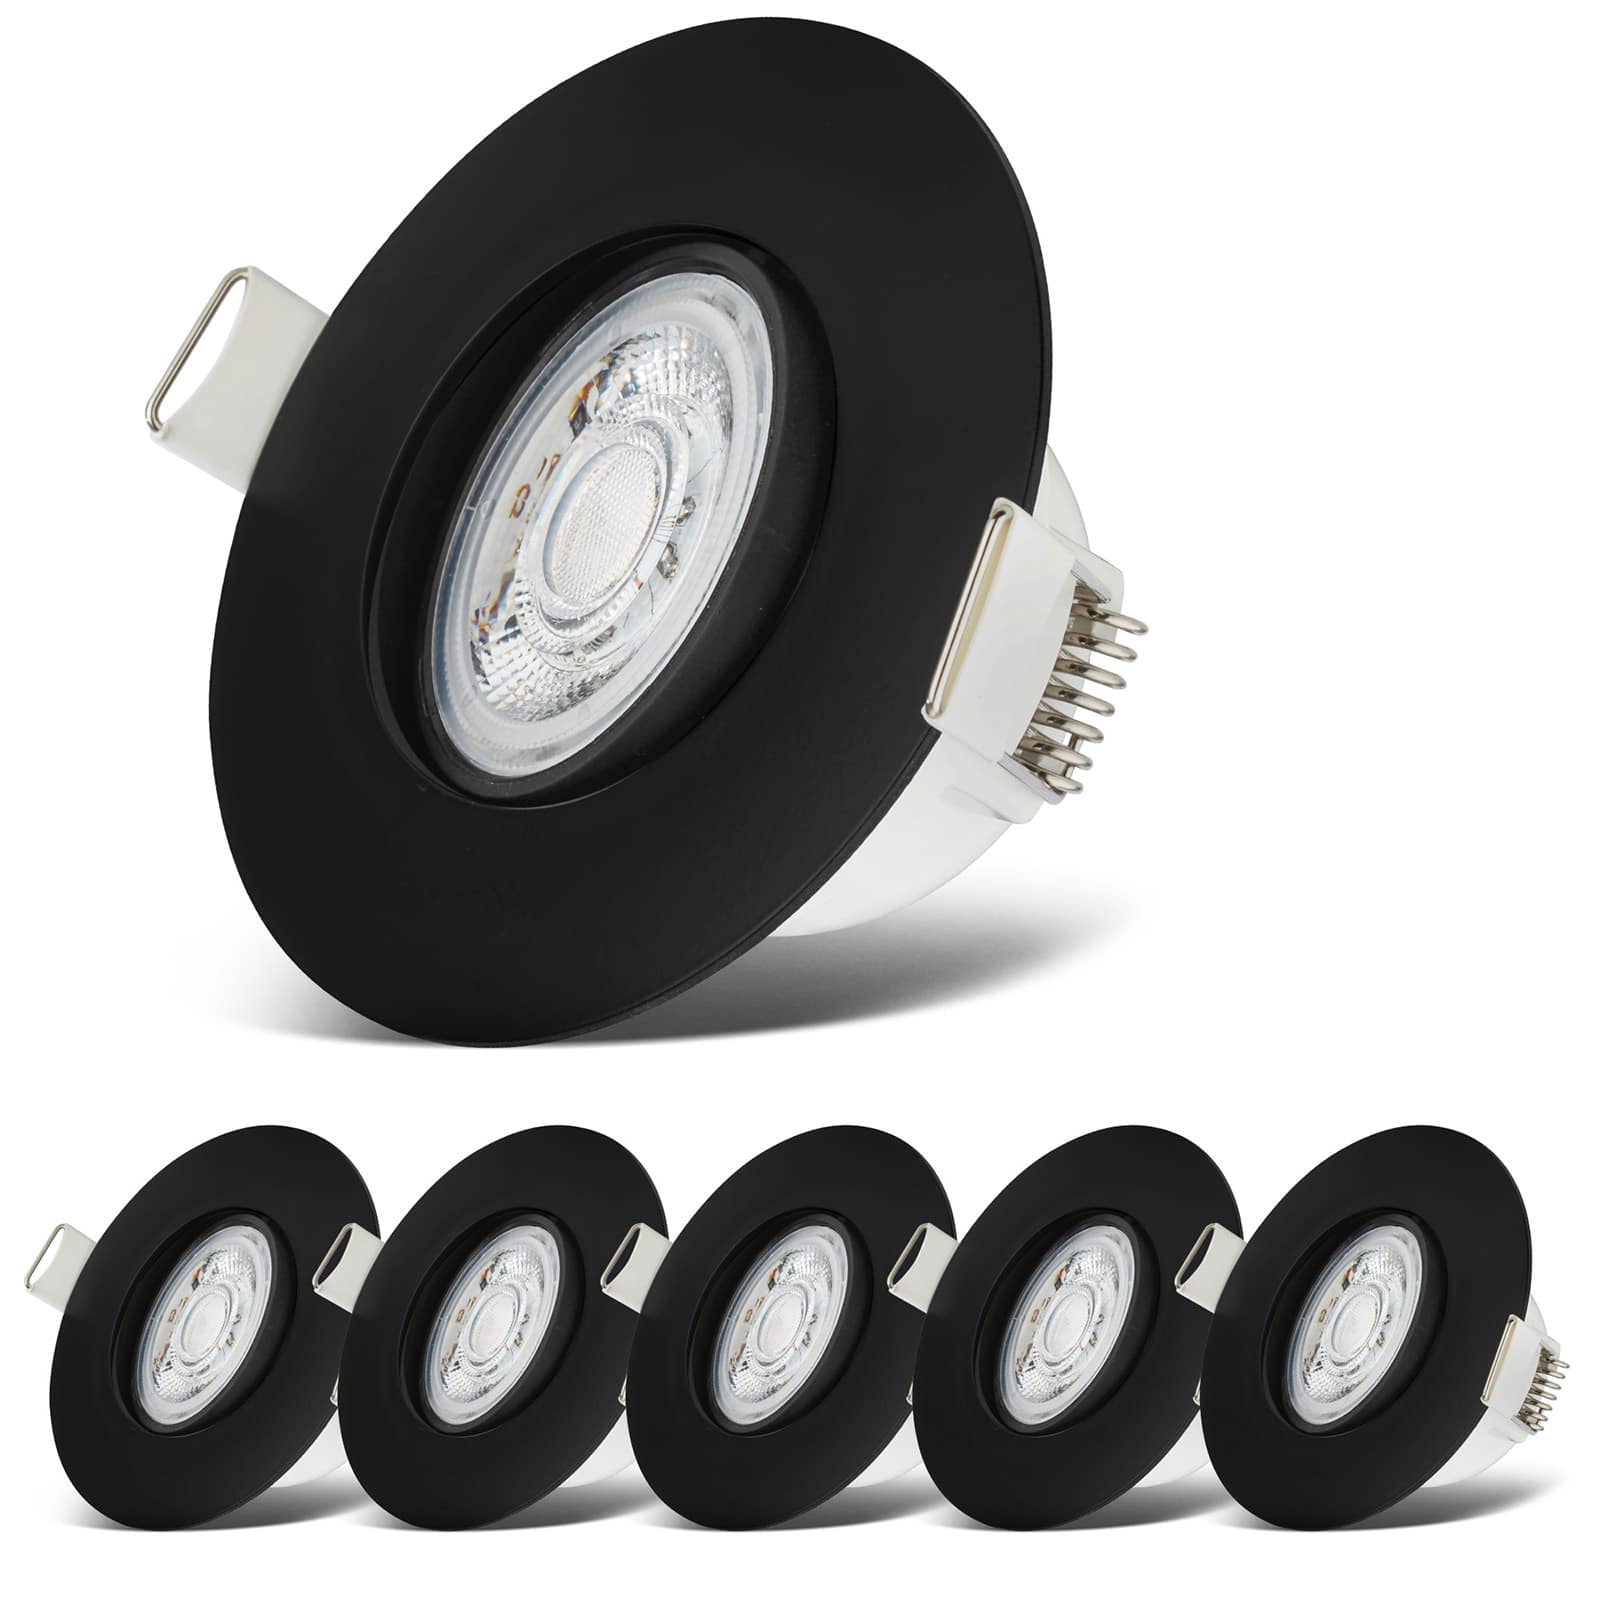 LED Einbaustrahler wasserfest Ø90mm - 6er SET - LED Einbauleuchten schwenkbar Badezimmer IP65 230V 5W 480lm warmweiße Lichtfarbe | Schwarz - 7